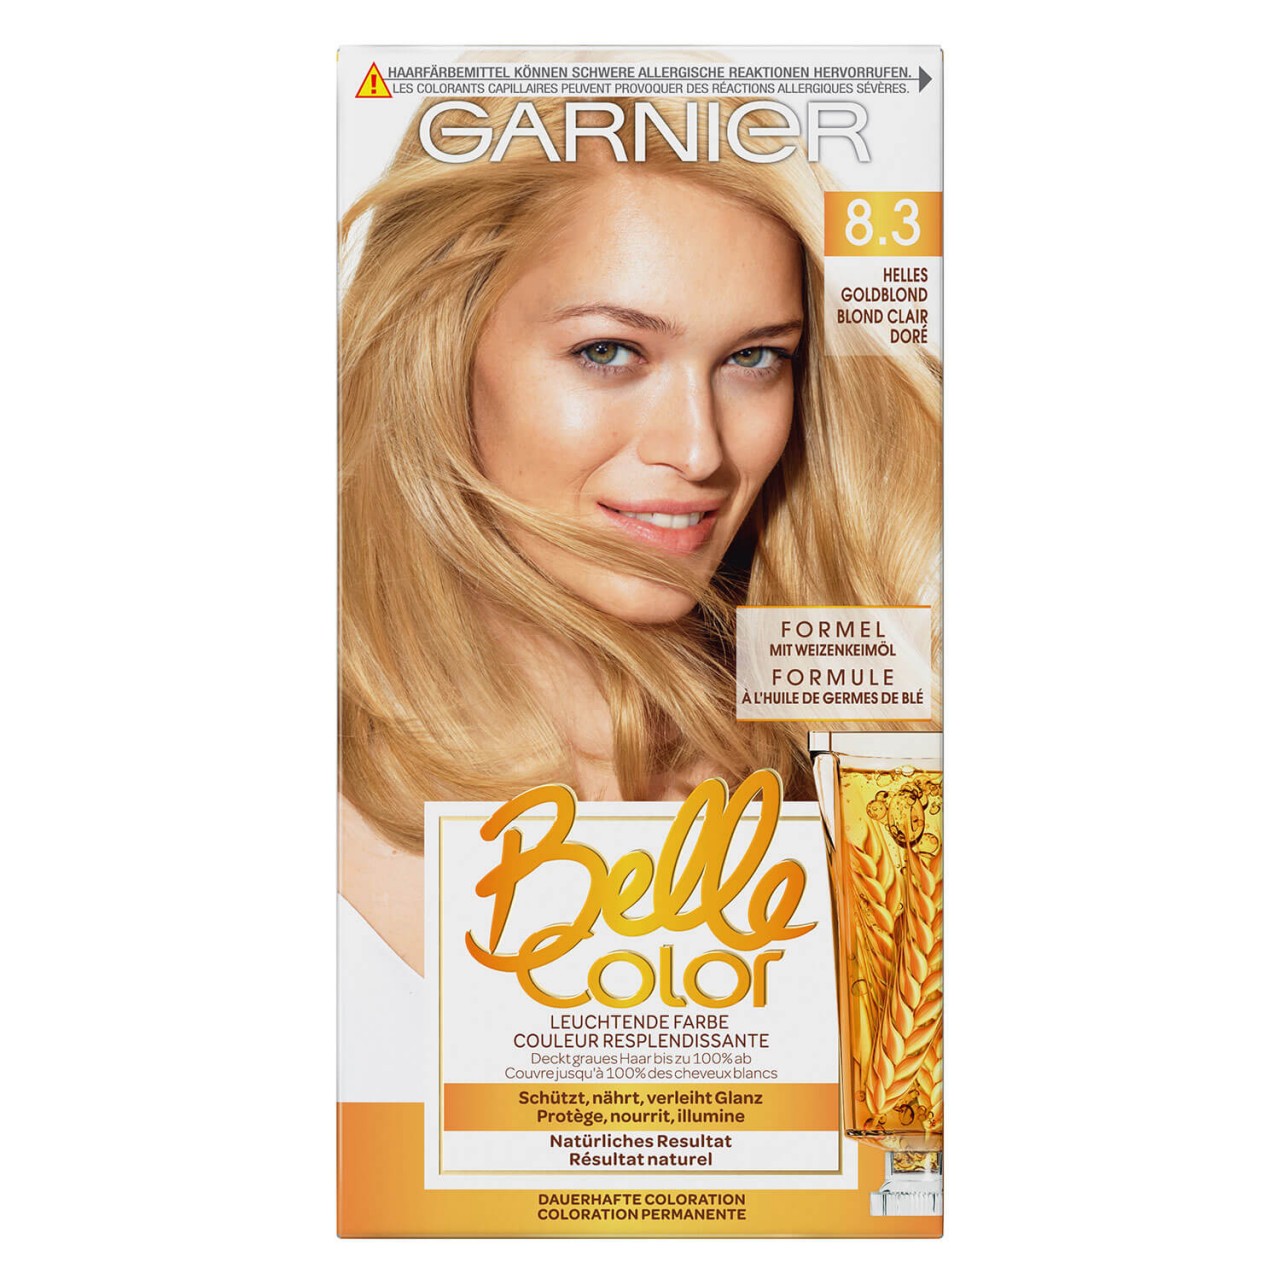 Belle Color - 8.3 Helles Goldblond von GARNIER